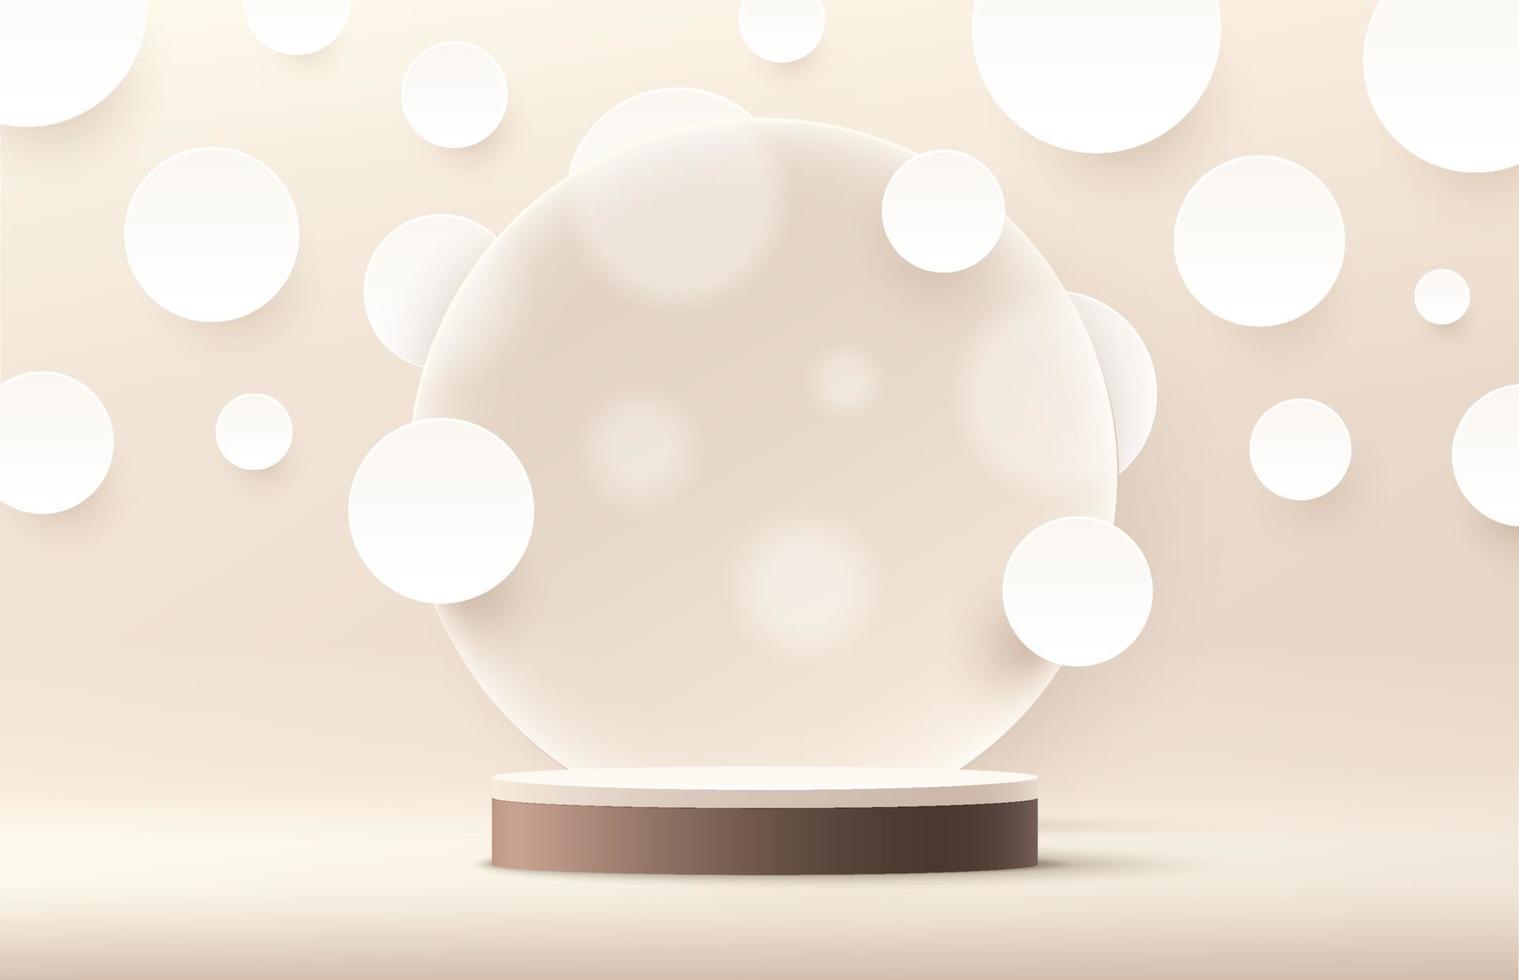 moderno pódio de pedestal de cilindro branco e marrom. pano de fundo do círculo de cor bege e bolinhas brancas no estilo de corte de papel. renderização de vetor forma 3d para apresentação de exibição de produtos. cena mínima abstrata